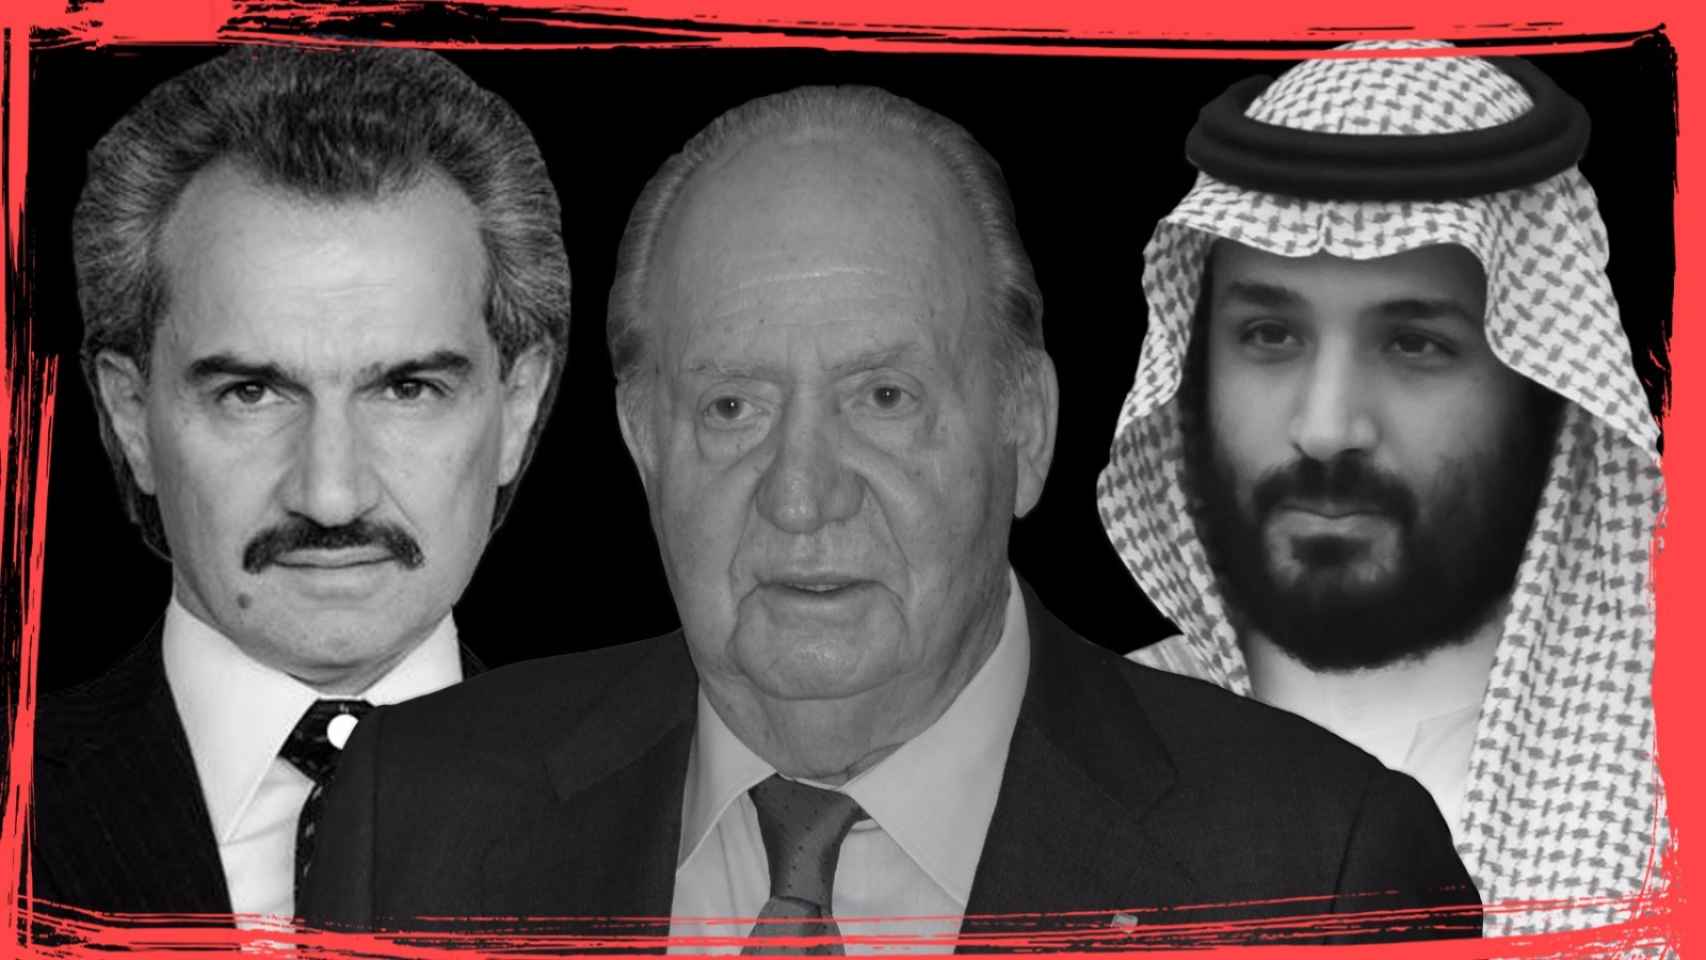 De izquierda a derecha, el príncipe saudí Al Waleed bin Talal bin Abdulaziz al Saud, quien estuvo acusado de violación; el rey emérito Juan Carlos I, y el heredero al trono de Arabia Saudí y actual ministro de Defensa, Mohamed bin Salman.